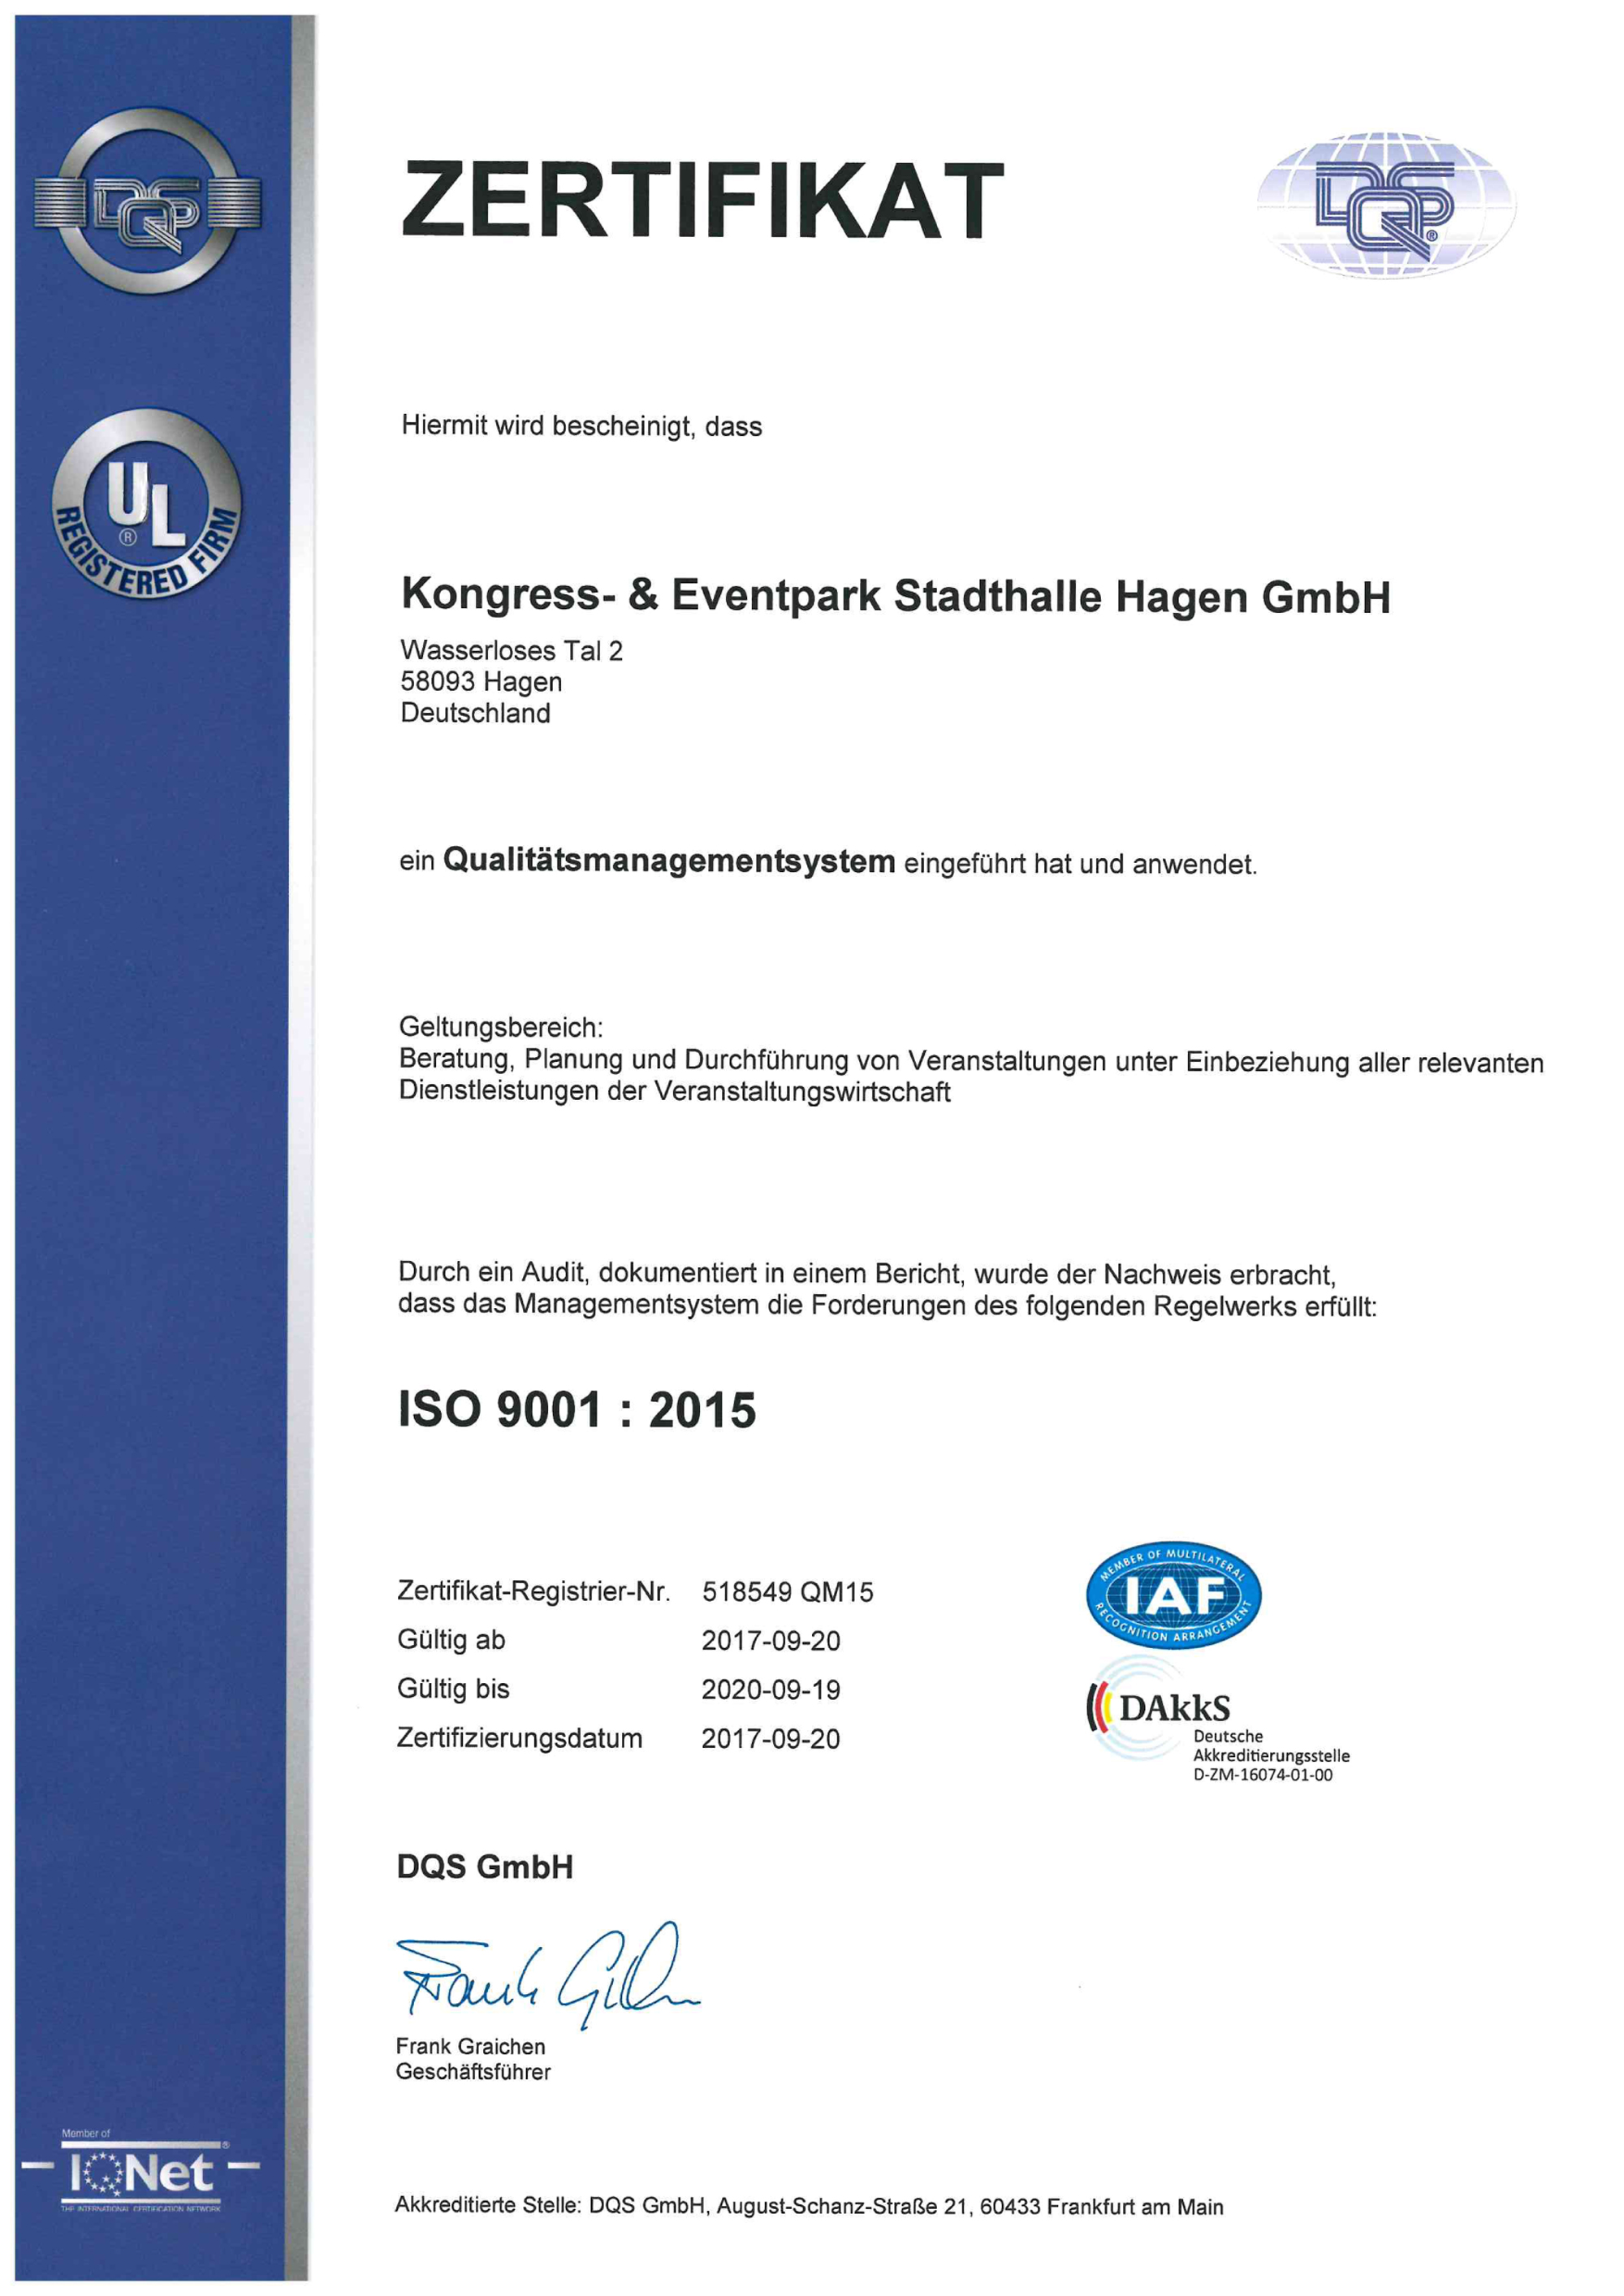 2016 ISO Zertifikat deutsch